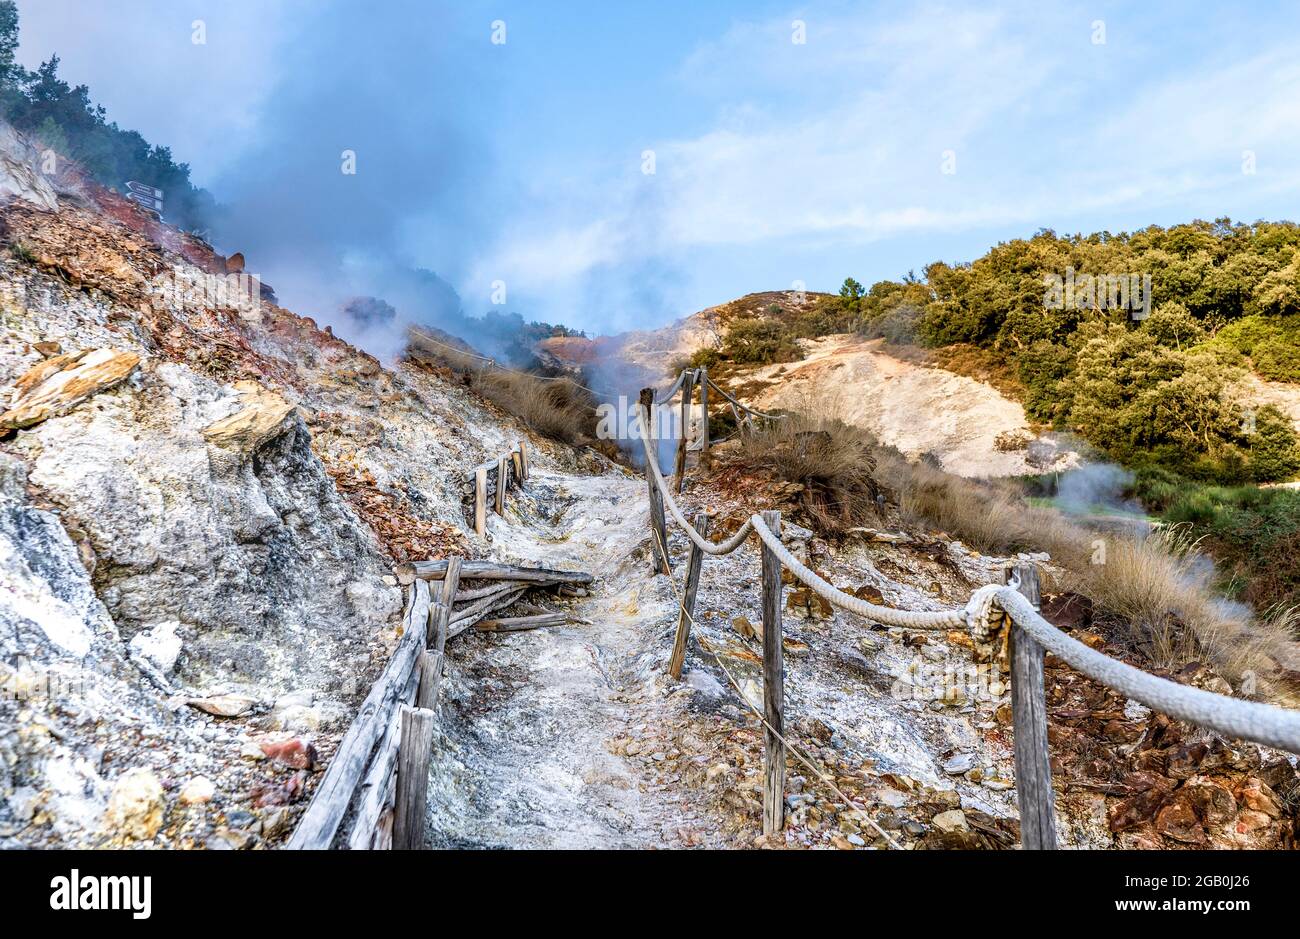 Geysers connu sous le nom de 'soffioni boraciferi' avec des steams utilisés pour produire de l'énergie géothermique, Parc naturel de la Biancane, Monterotondo Marittimo, Italie Banque D'Images